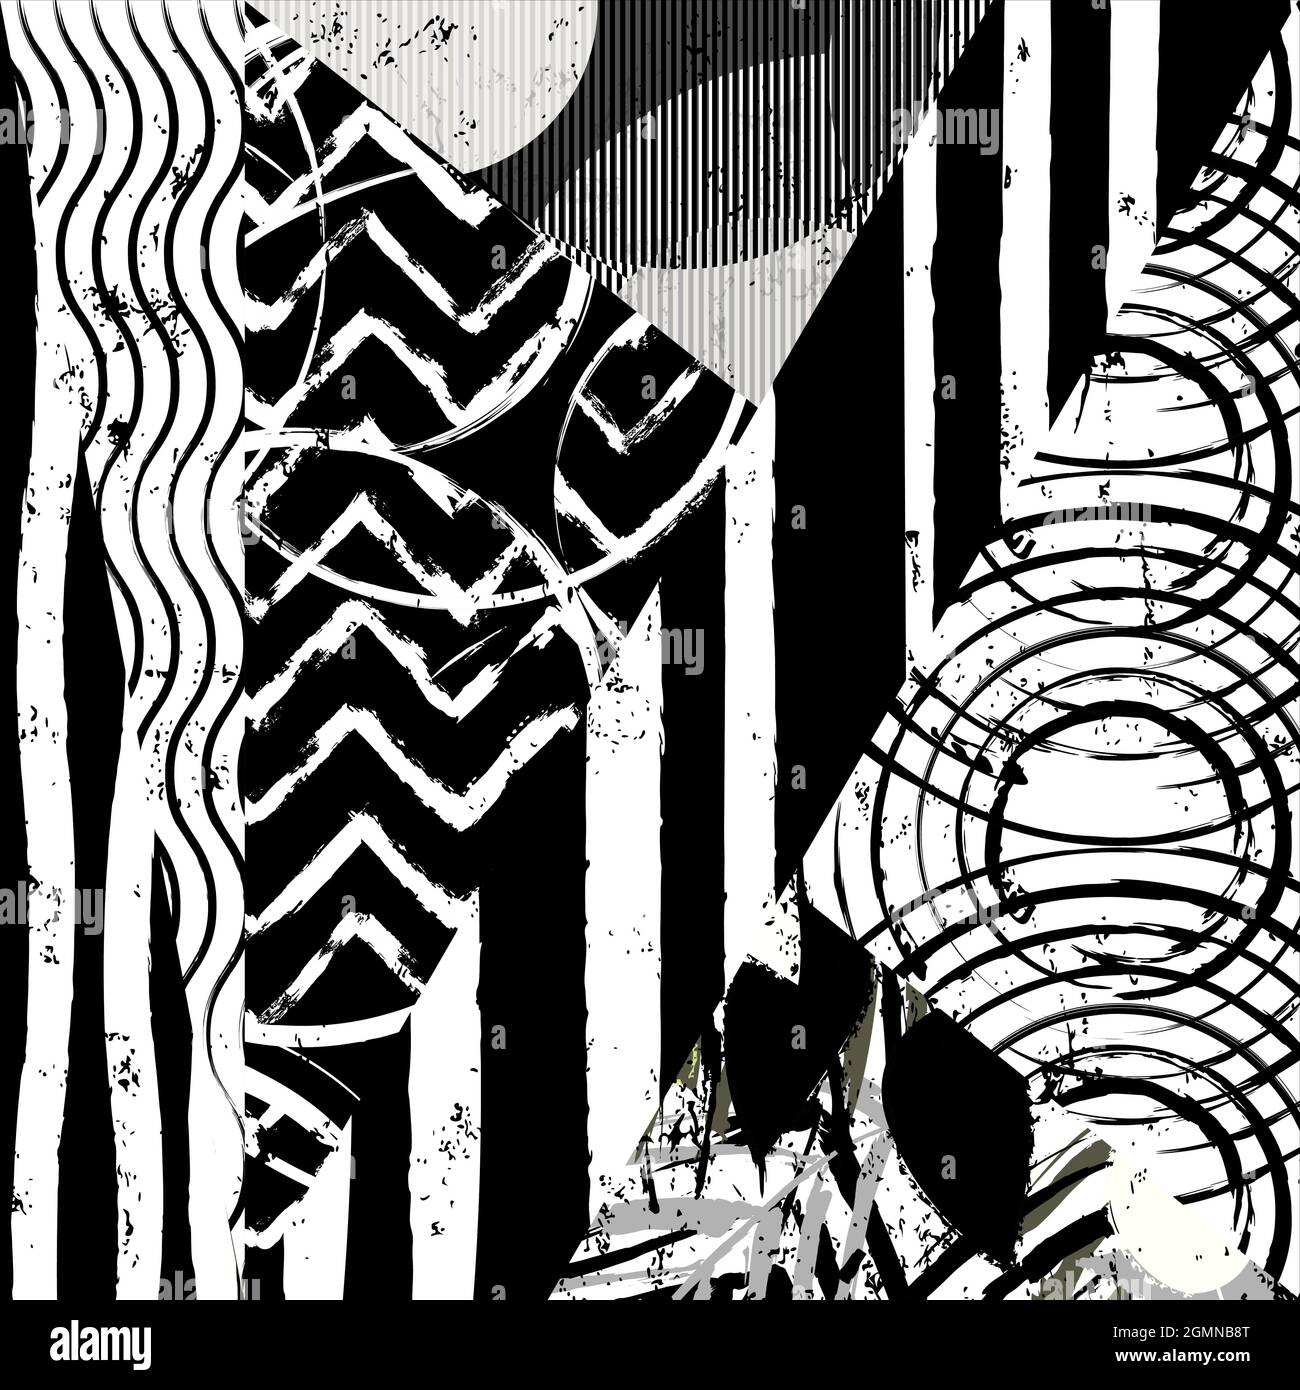 motif d'arrière-plan géométrique abstrait, avec triangles, cercles, traits de peinture et éclaboussures, noir et blanc Illustration de Vecteur